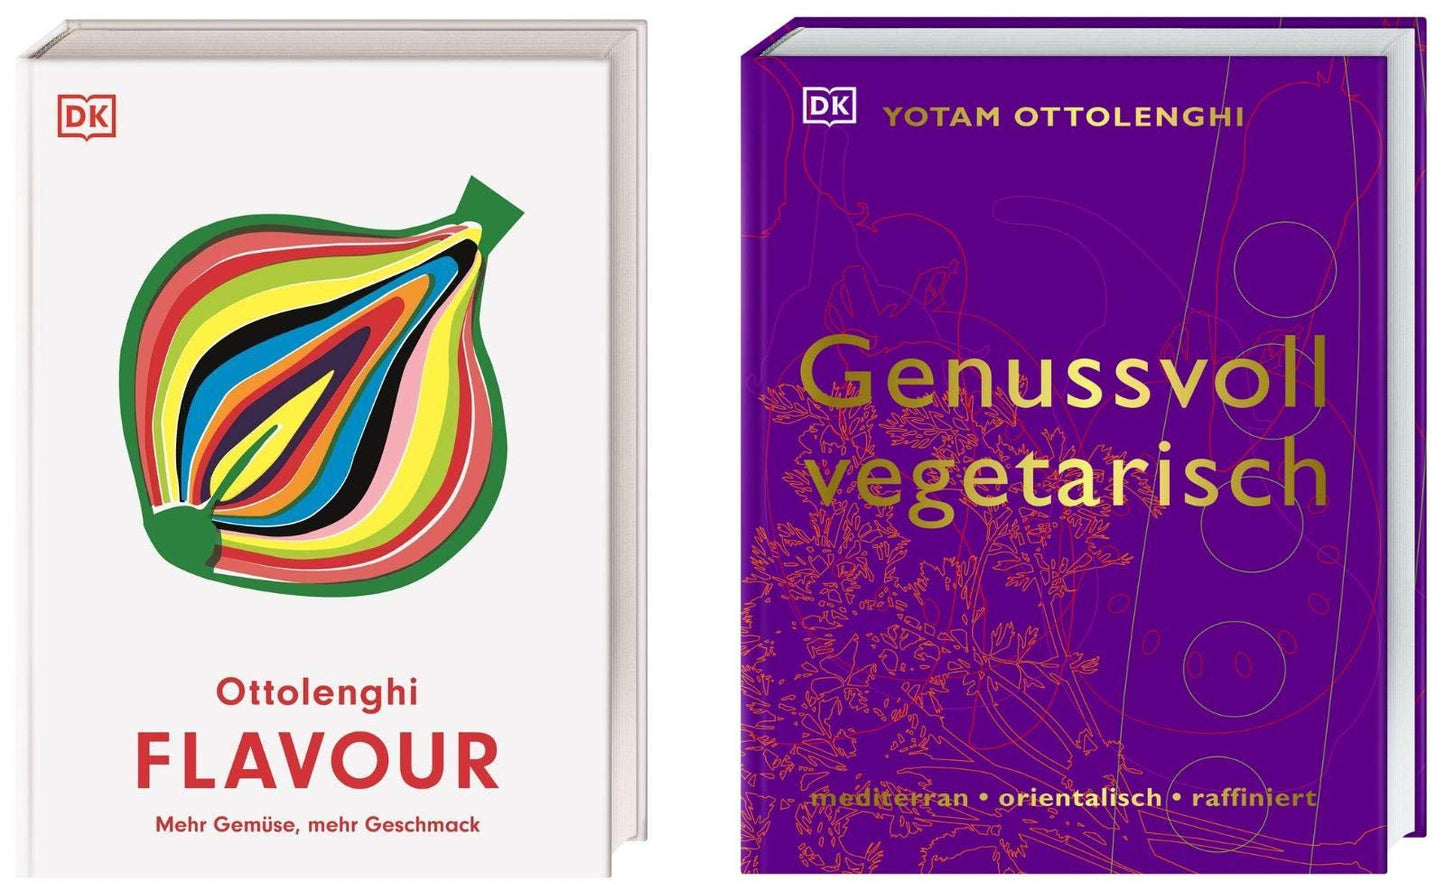 Flavour + Genussvoll vegetarisch von Yotam Ottolenghi + 1 exklusives Postkartenset